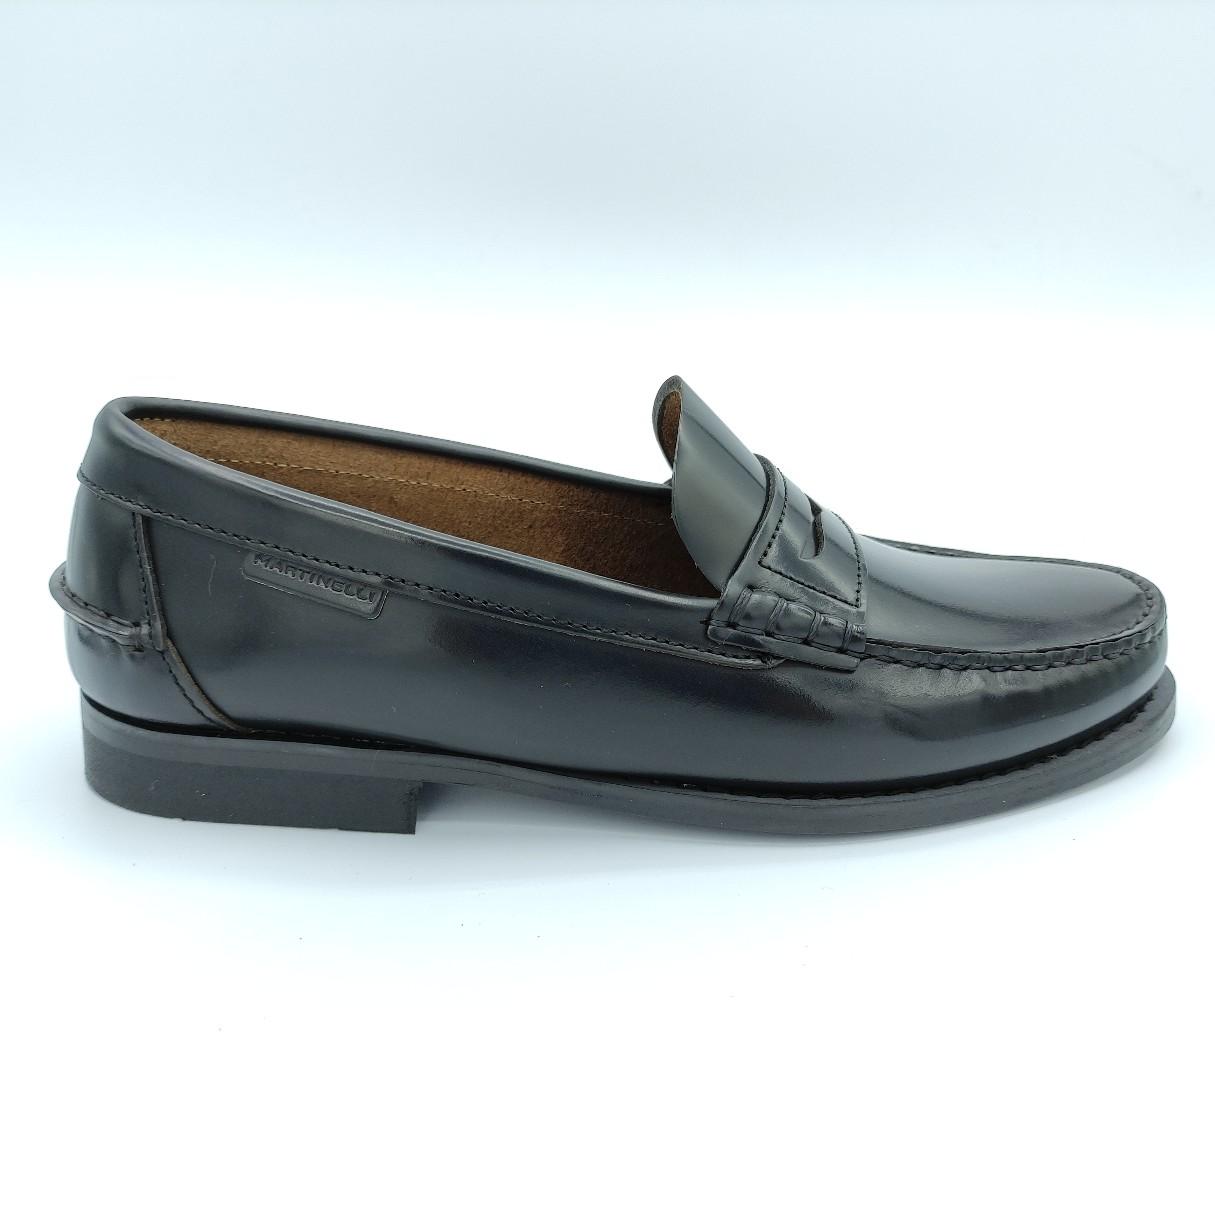 Zapato castellano negro de Martinelli